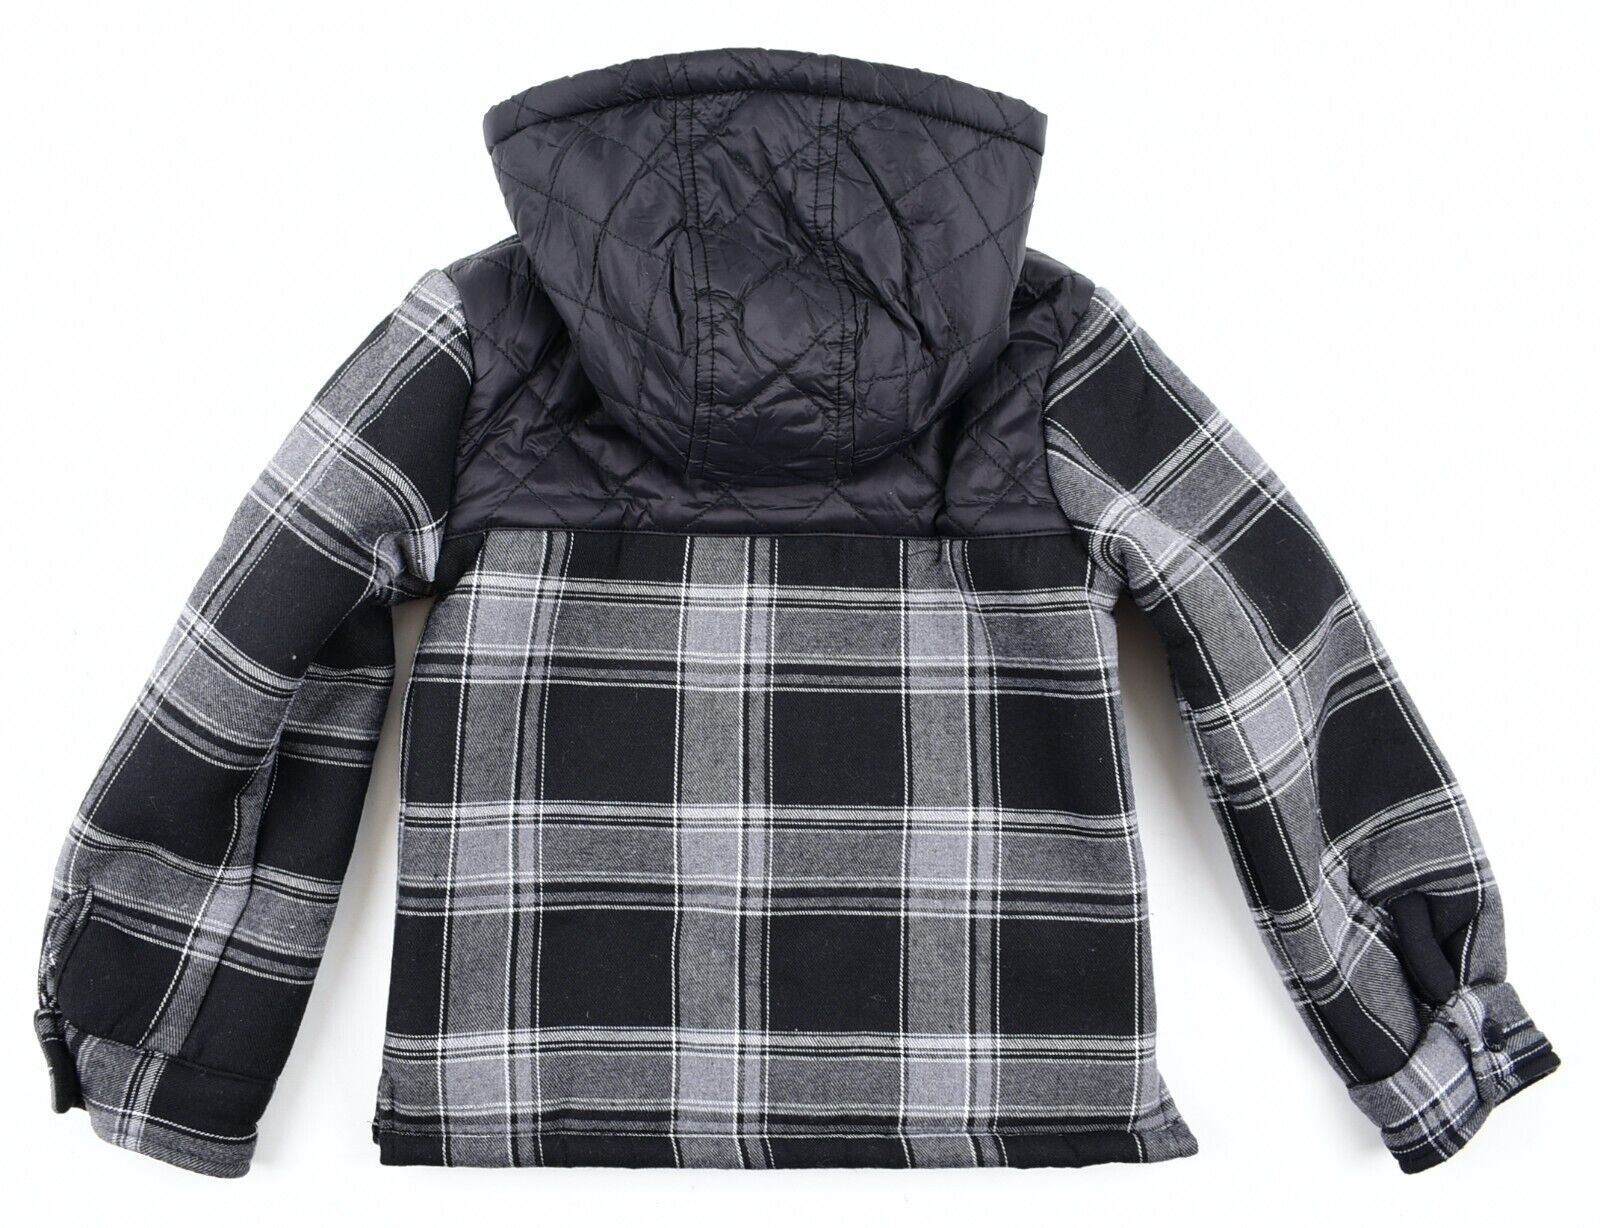 FIRETRAP Boys Kids Teddy Fleece Lined Shirt Jacket, Grey-Black, size 6-7 years